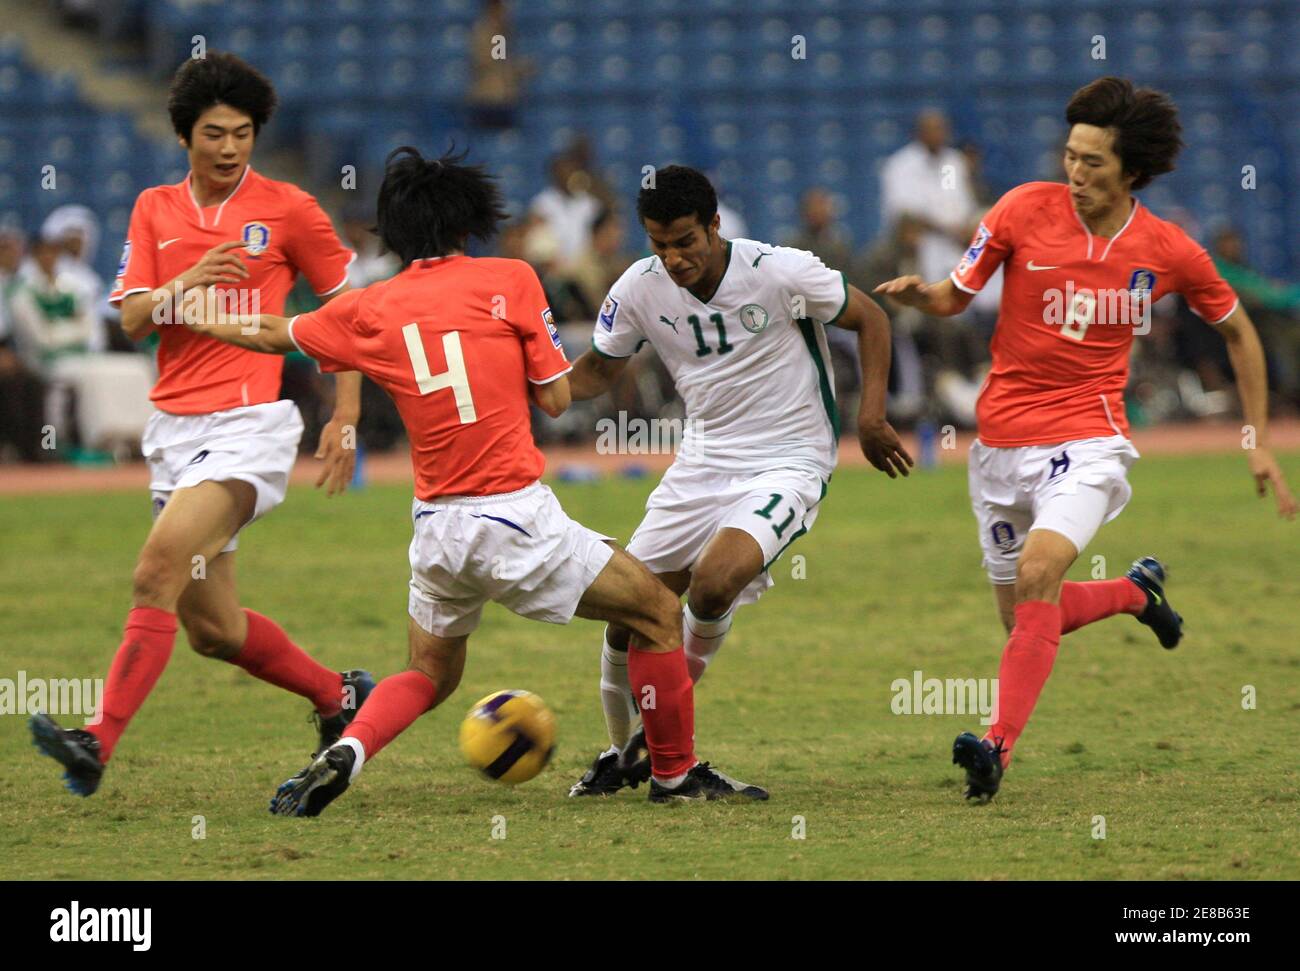 Nayaf Hazazi (11) d'Arabie saoudite se bat pour le bal avec Kim Chi Woo, Cho Yong Hkang et Ki Sung Yueng de Corée du Sud (R à L) lors de leur match de football de qualification à Riyad le 19 novembre 2008. REUTERS/Fahad Shadeed (ARABIE SAOUDITE) Banque D'Images